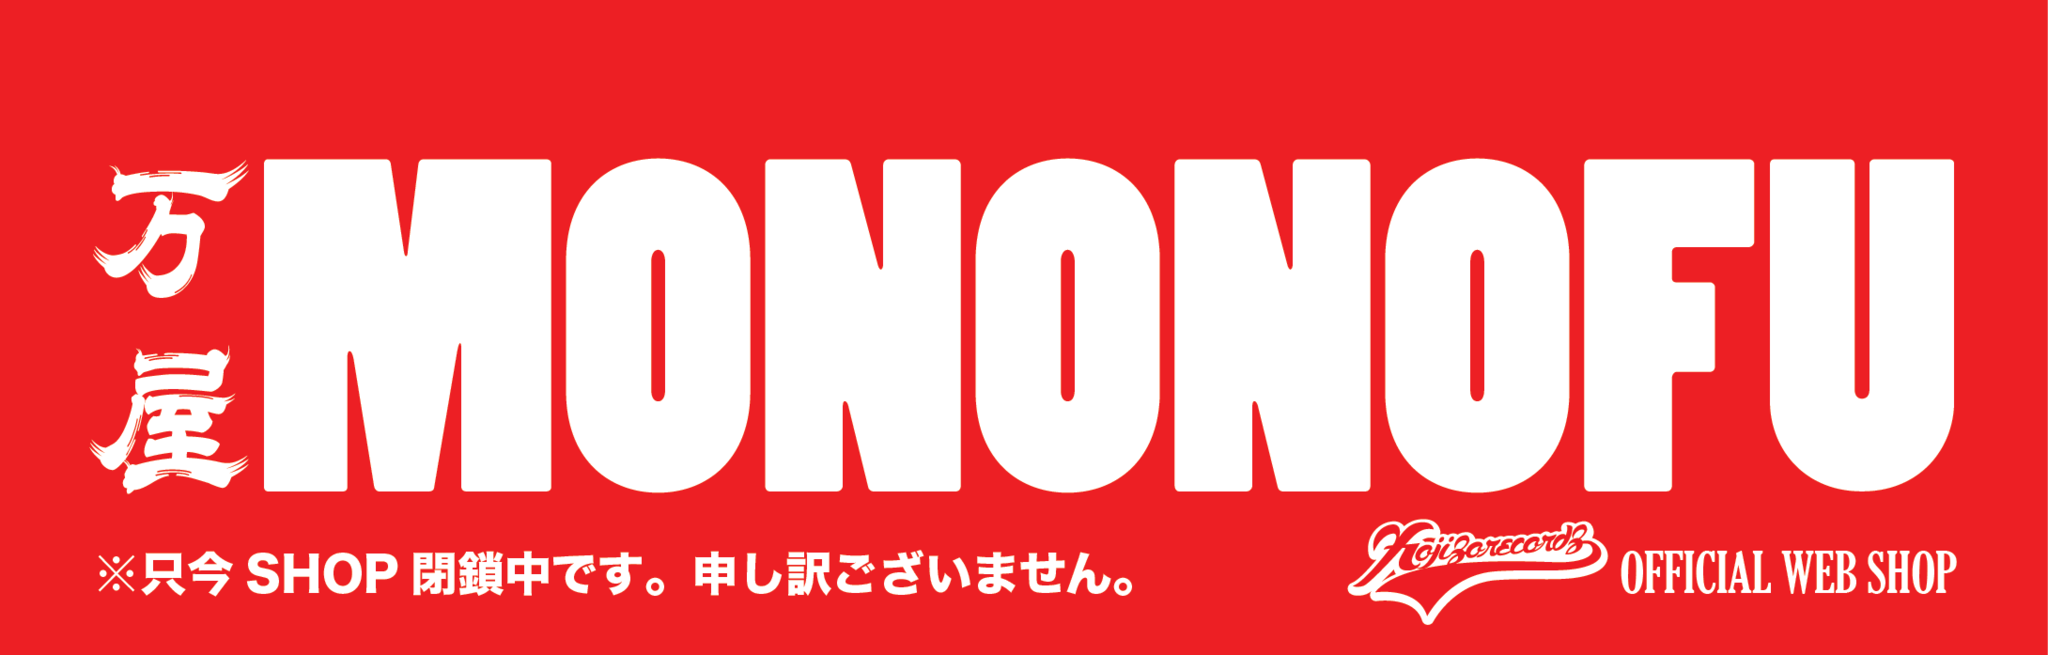 KOJIZO RECORDZ OFFICIAL WEB SHOP "万屋 MONONOFU(ヨロズヤ モノノフ)"